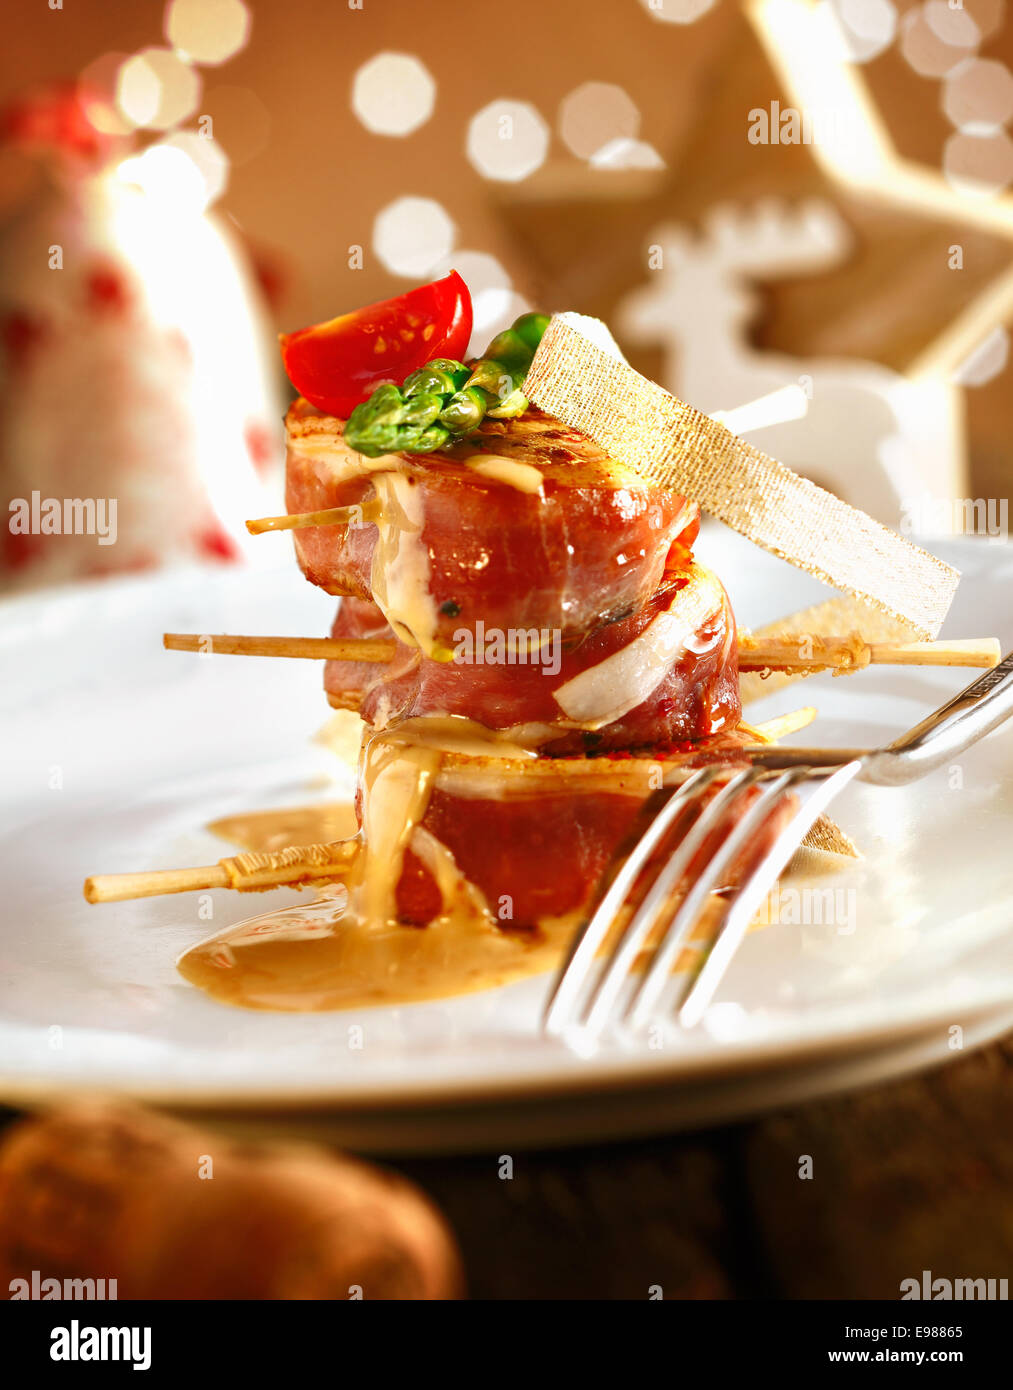 Bankett-Festmahl mit Weihnachtsdekoration. Rotes Fleisch Schweinefilet auf einem weißen Teller mit schönen beleuchtet Boketh Hintergrund des Goldenen Lichts Stockfoto